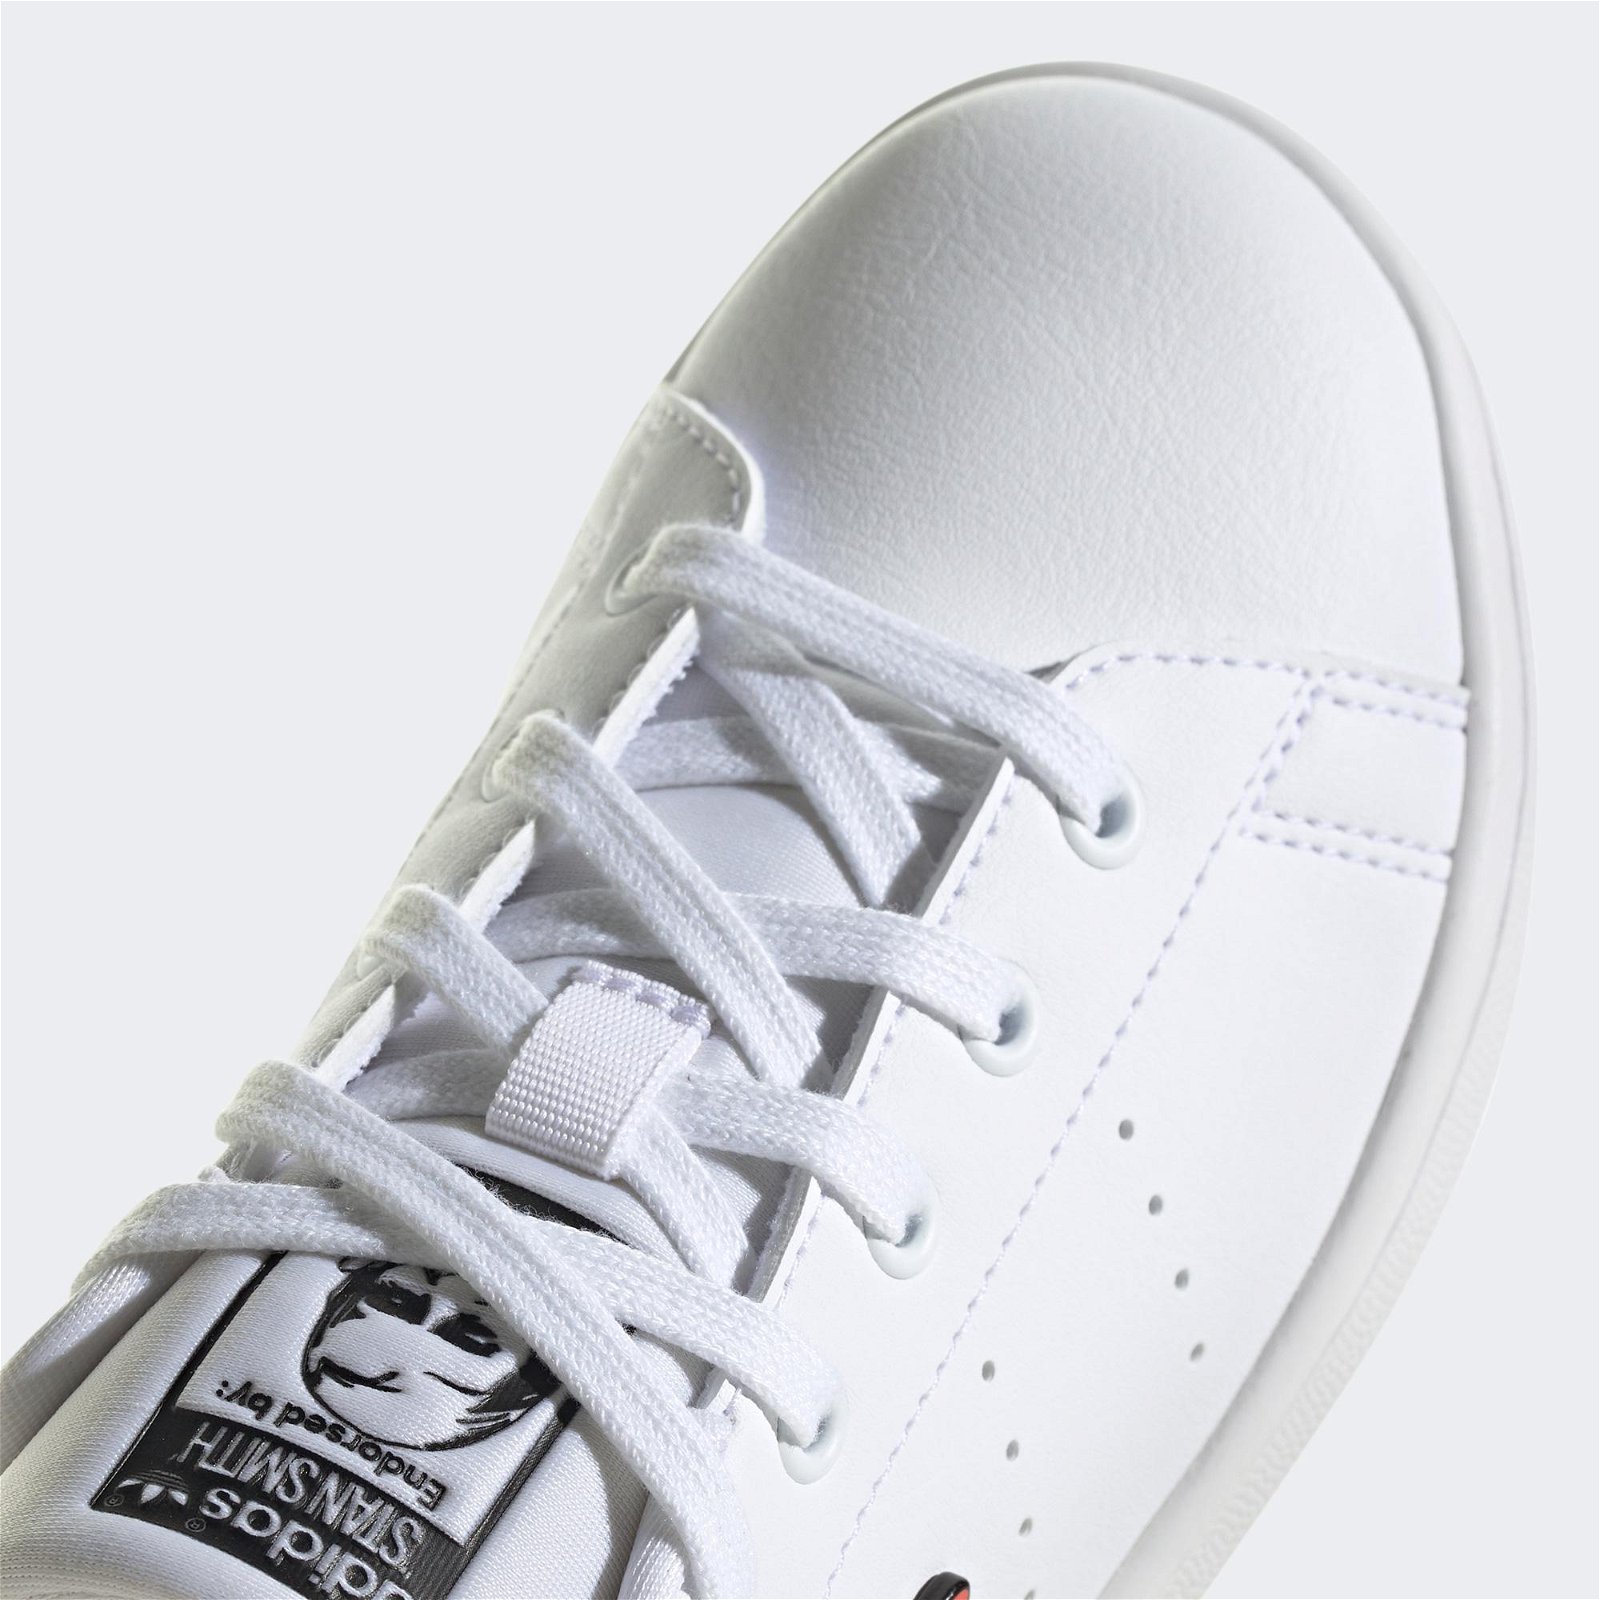 adidas Stan Smith Çocuk Beyaz-Kırmızı Spor Ayakkabı